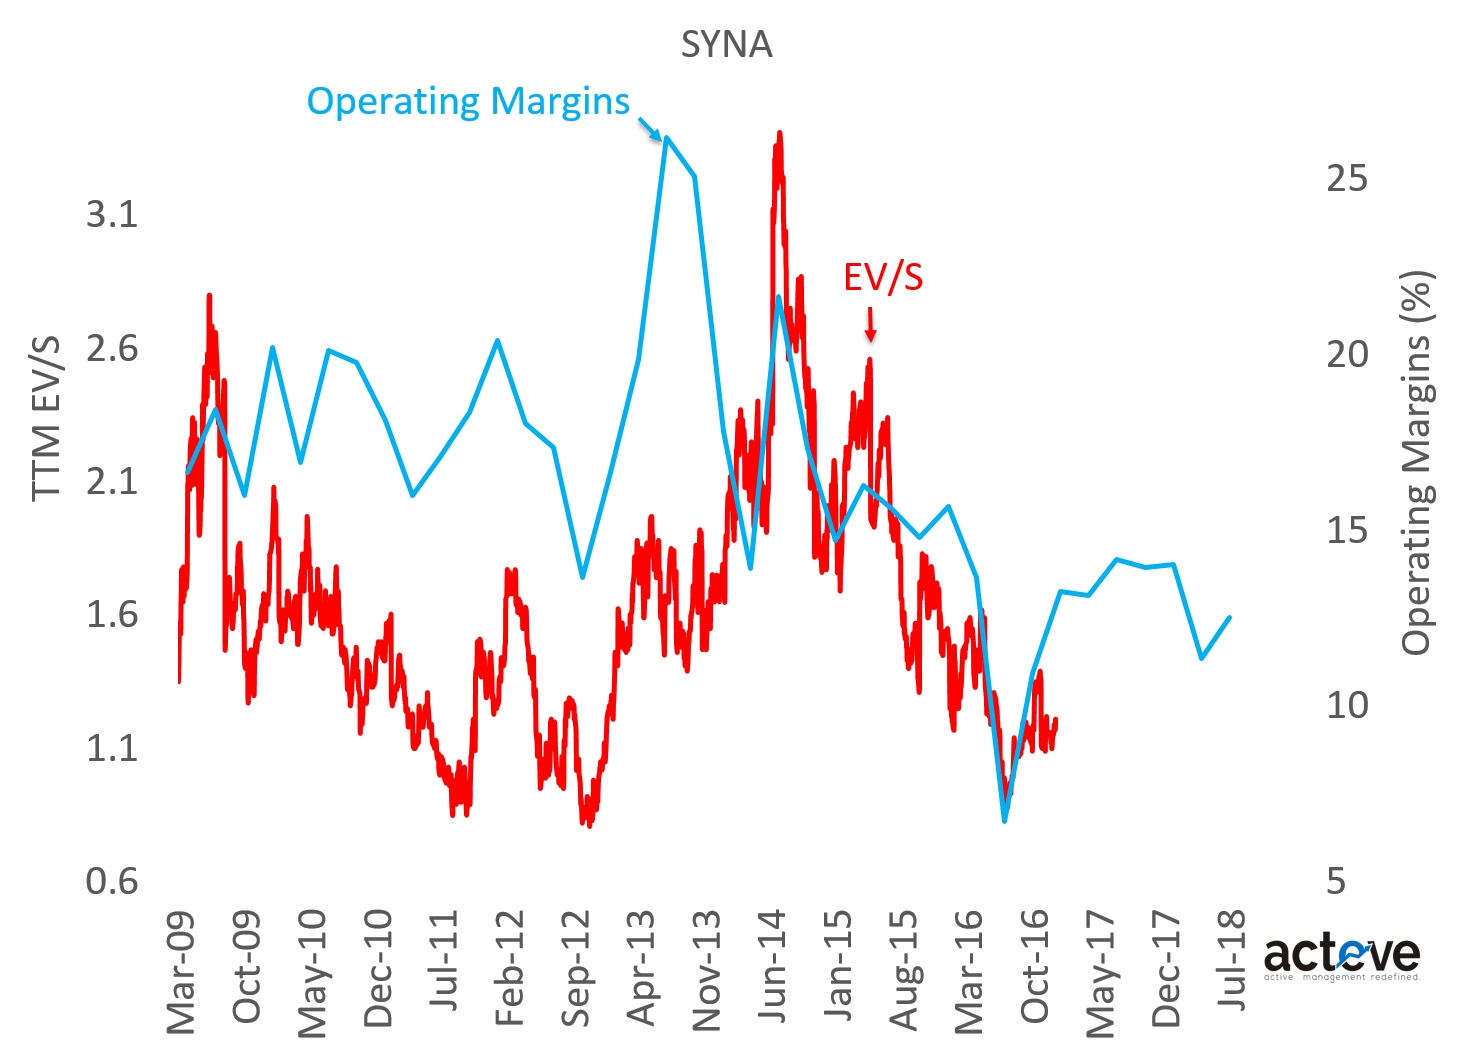 SYNA EV/S vs Operating Margin